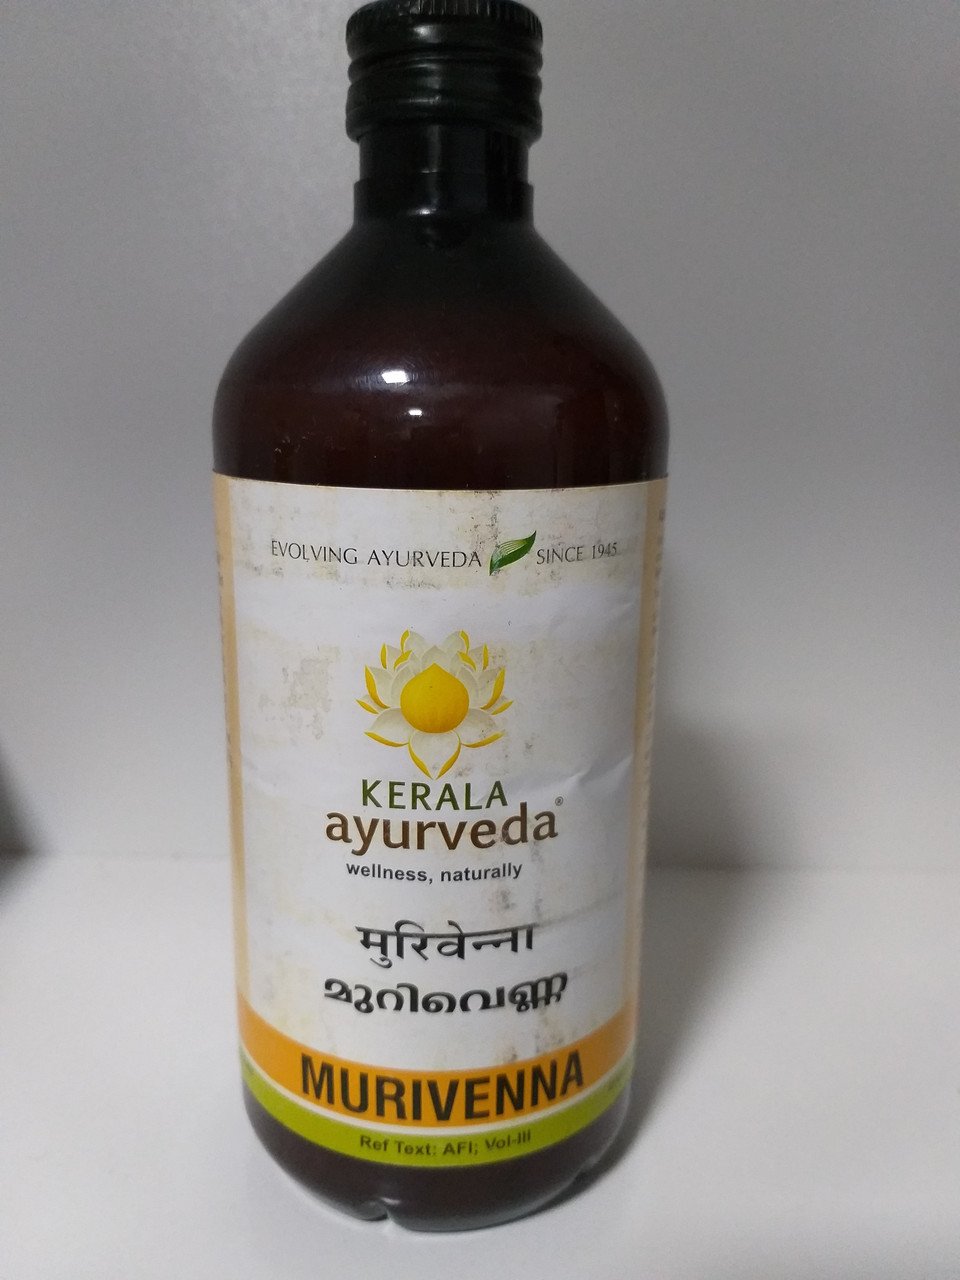 Массажное масло  Муривенна, 450 мл, Murivenna Thailam, Kerala Ayurveda, фото 1